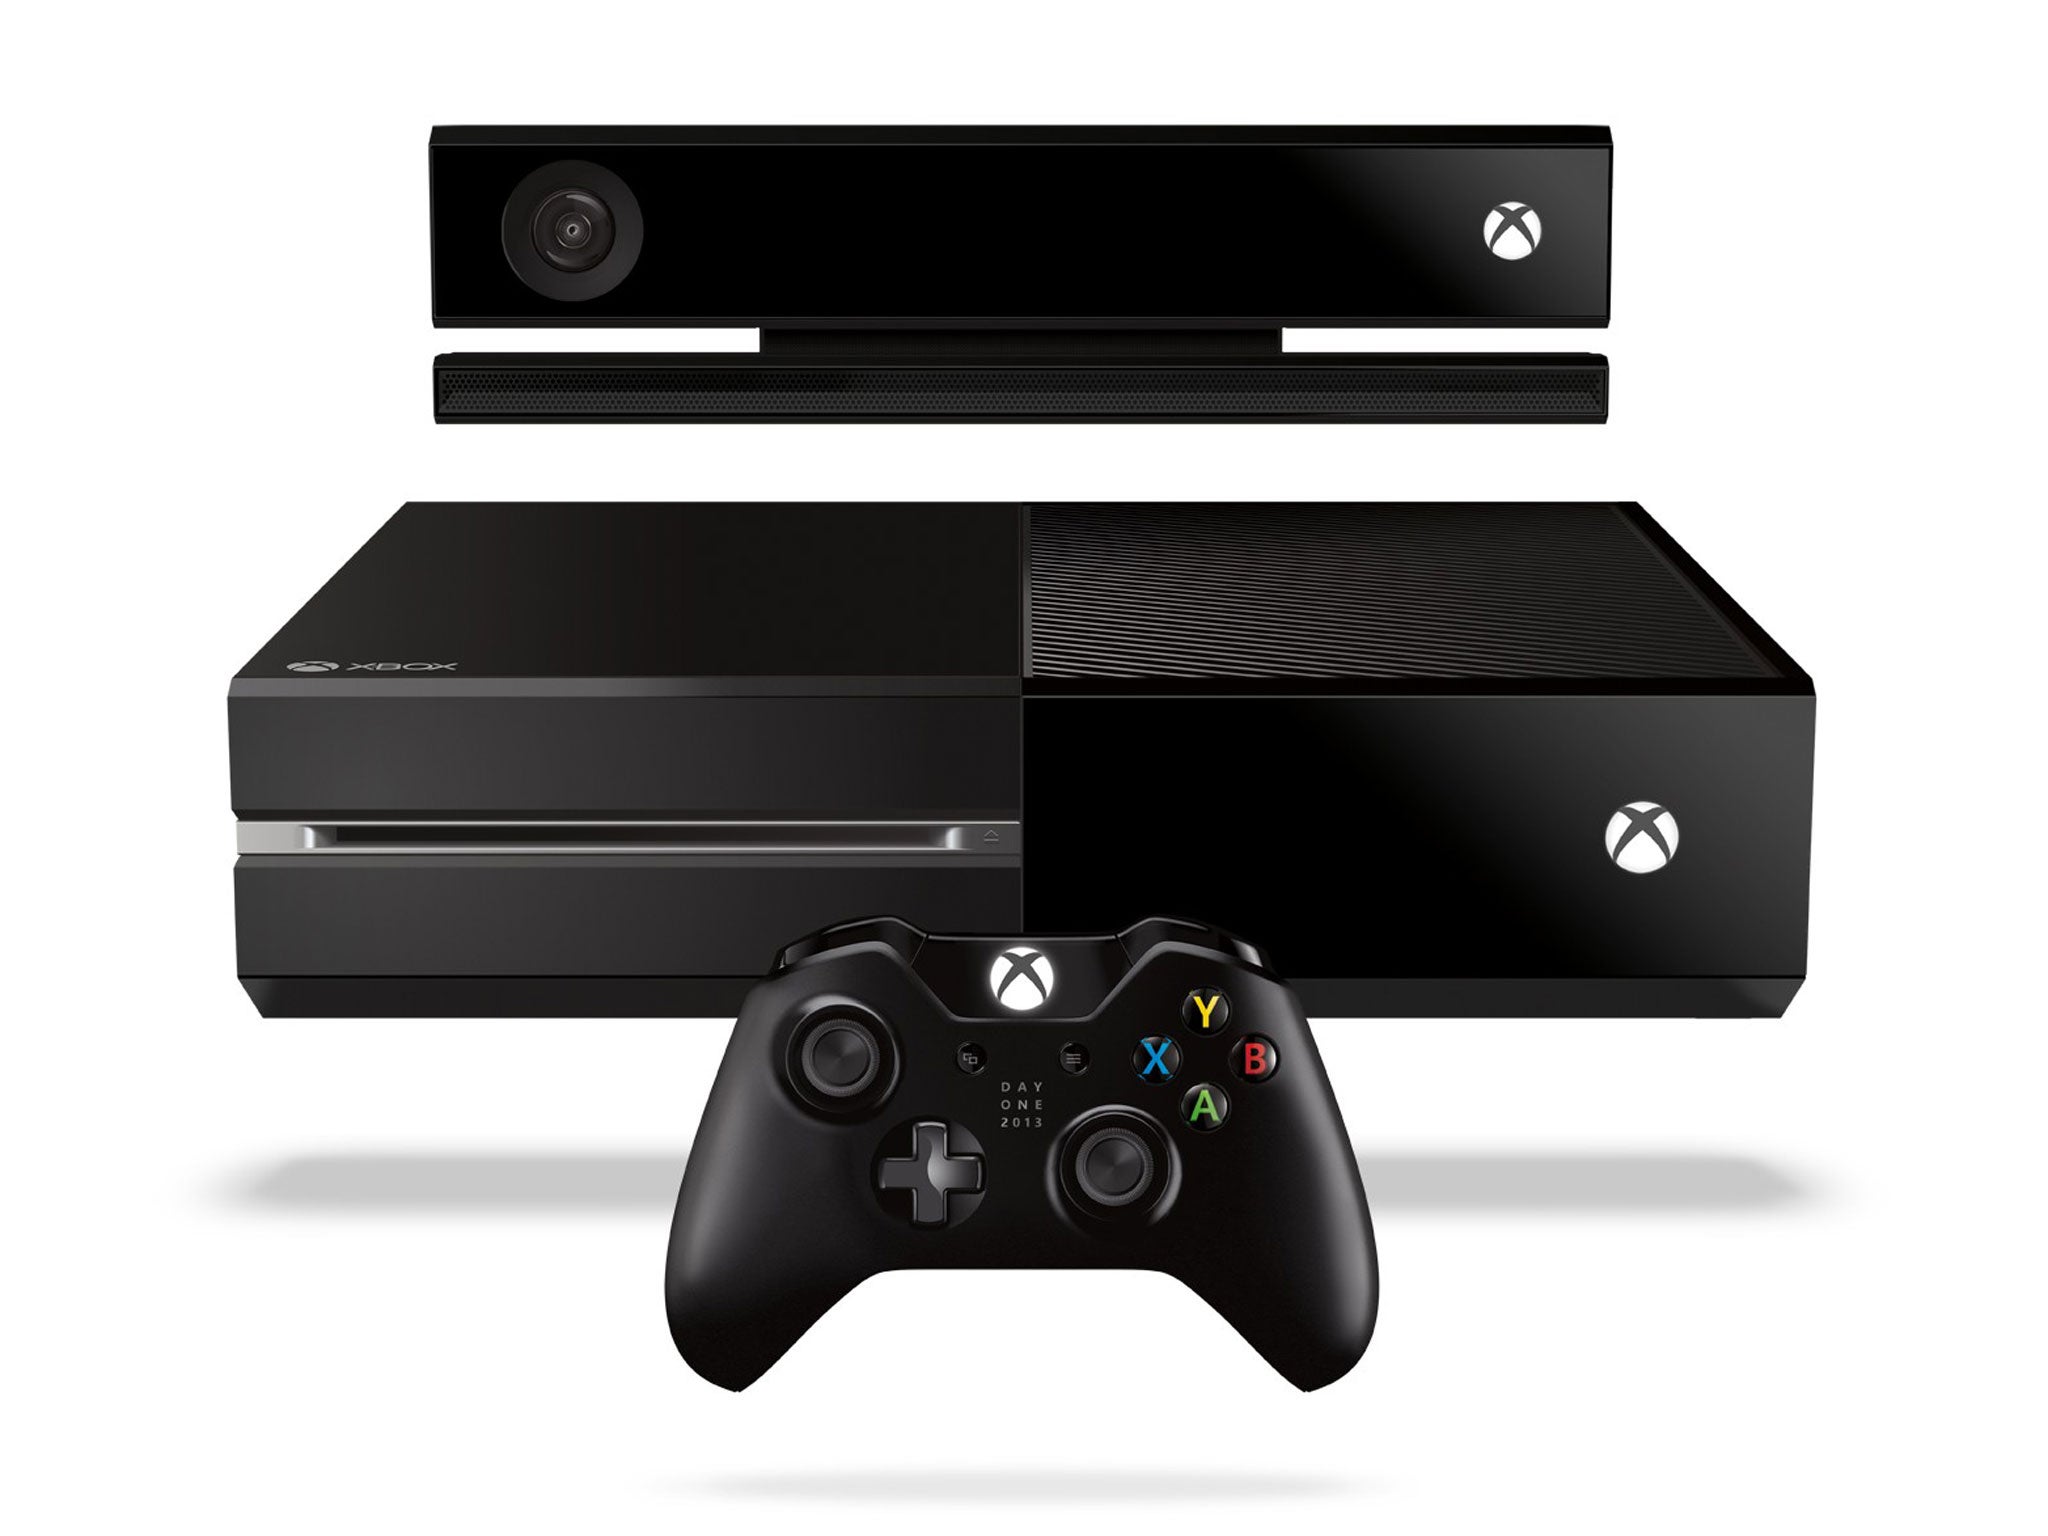 Xbox one, price: £429